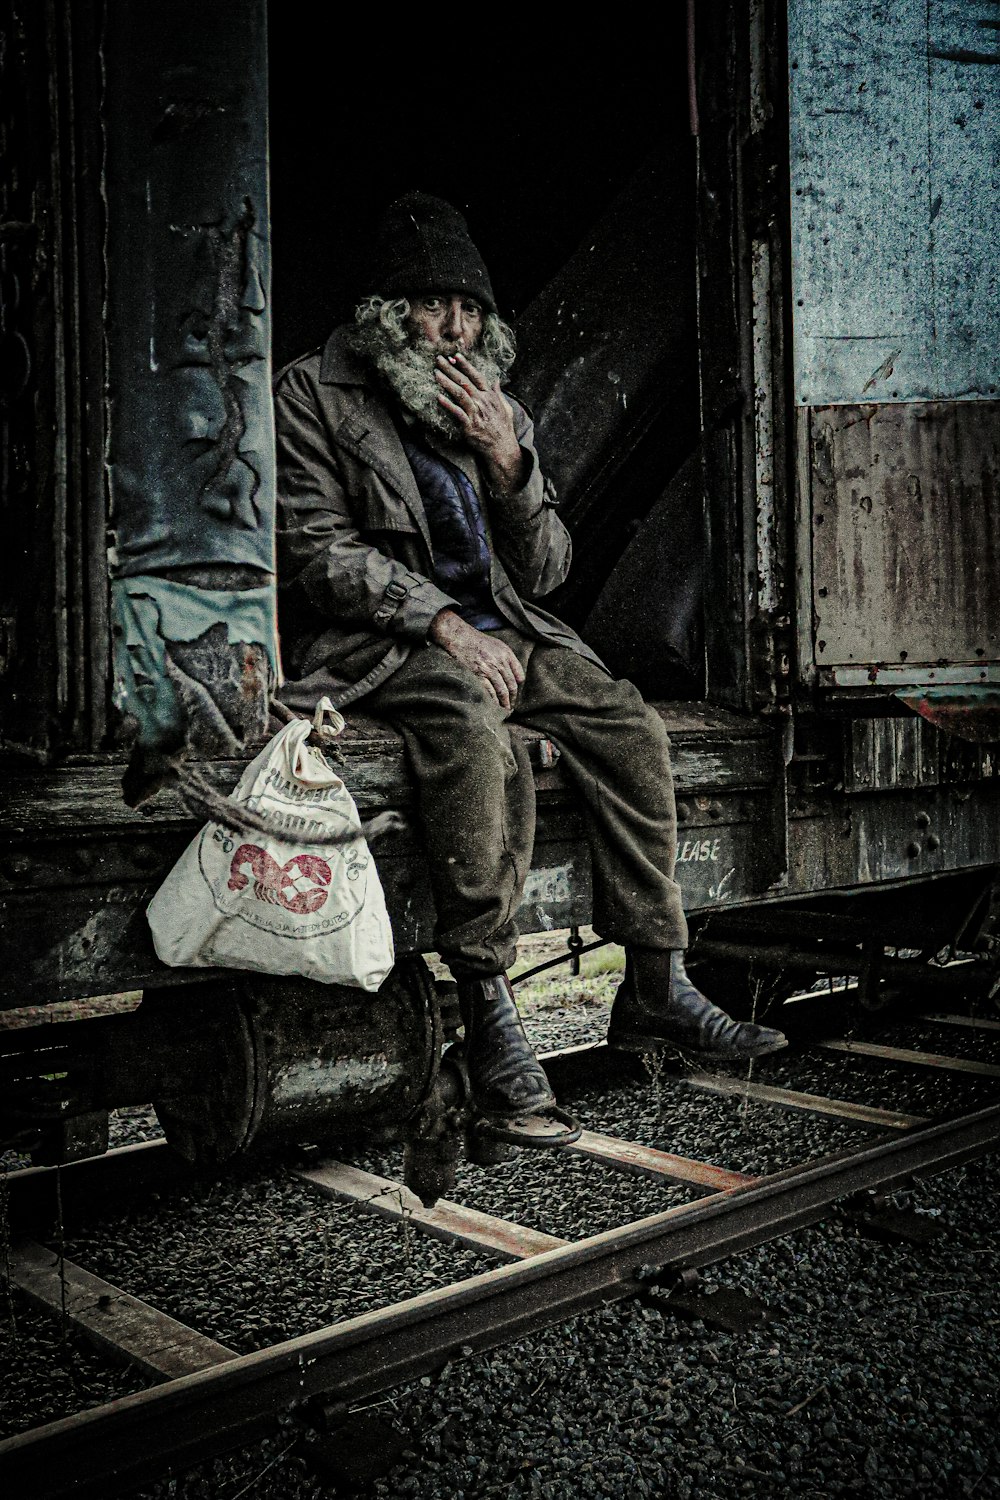 a man is sitting on a train car